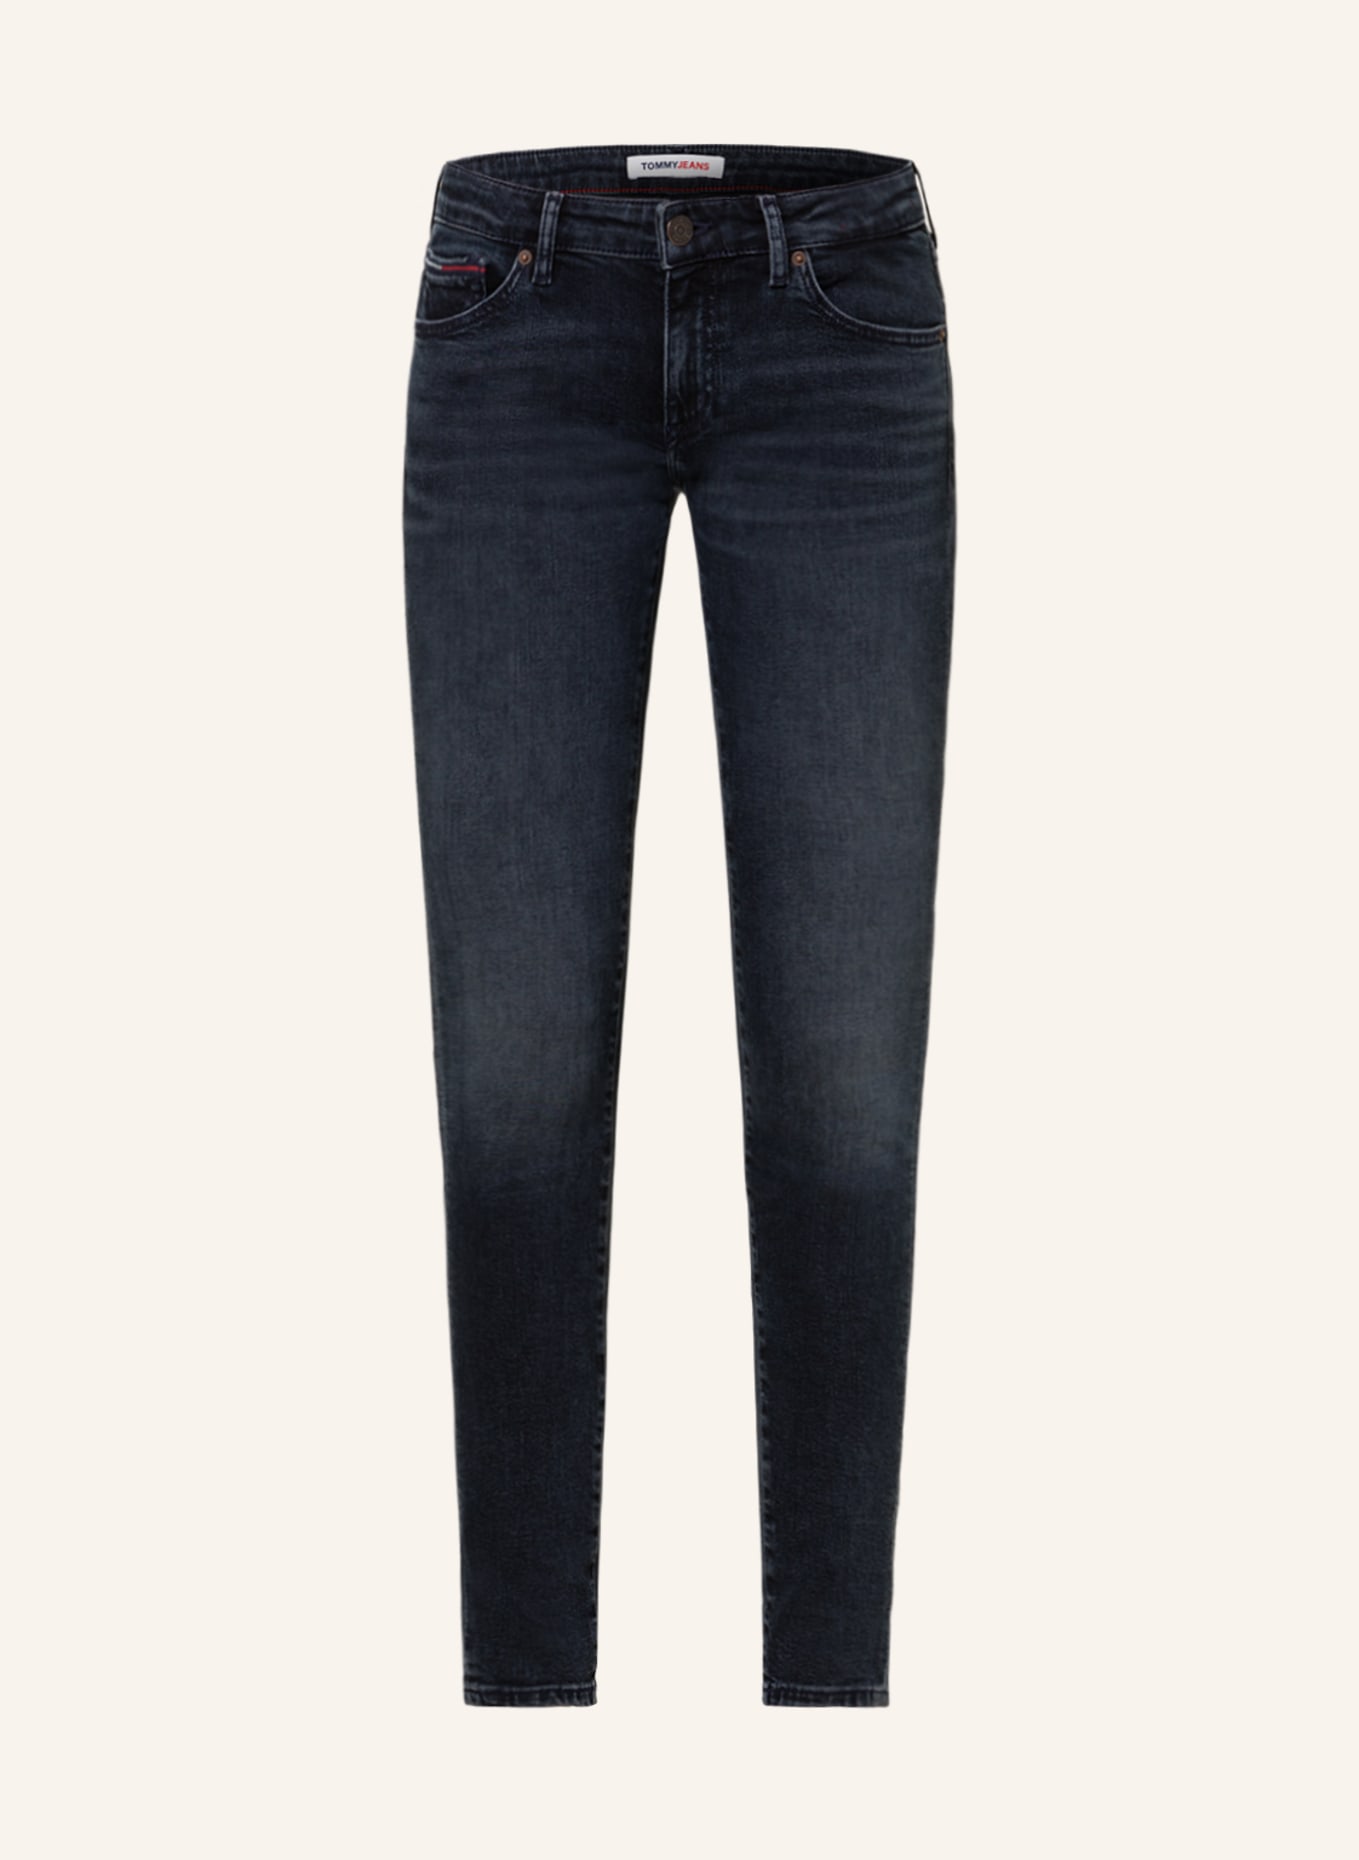 TOMMY JEANS Skinny Jeans SOPHIE, Farbe: 1BK Denim Dark (Bild 1)